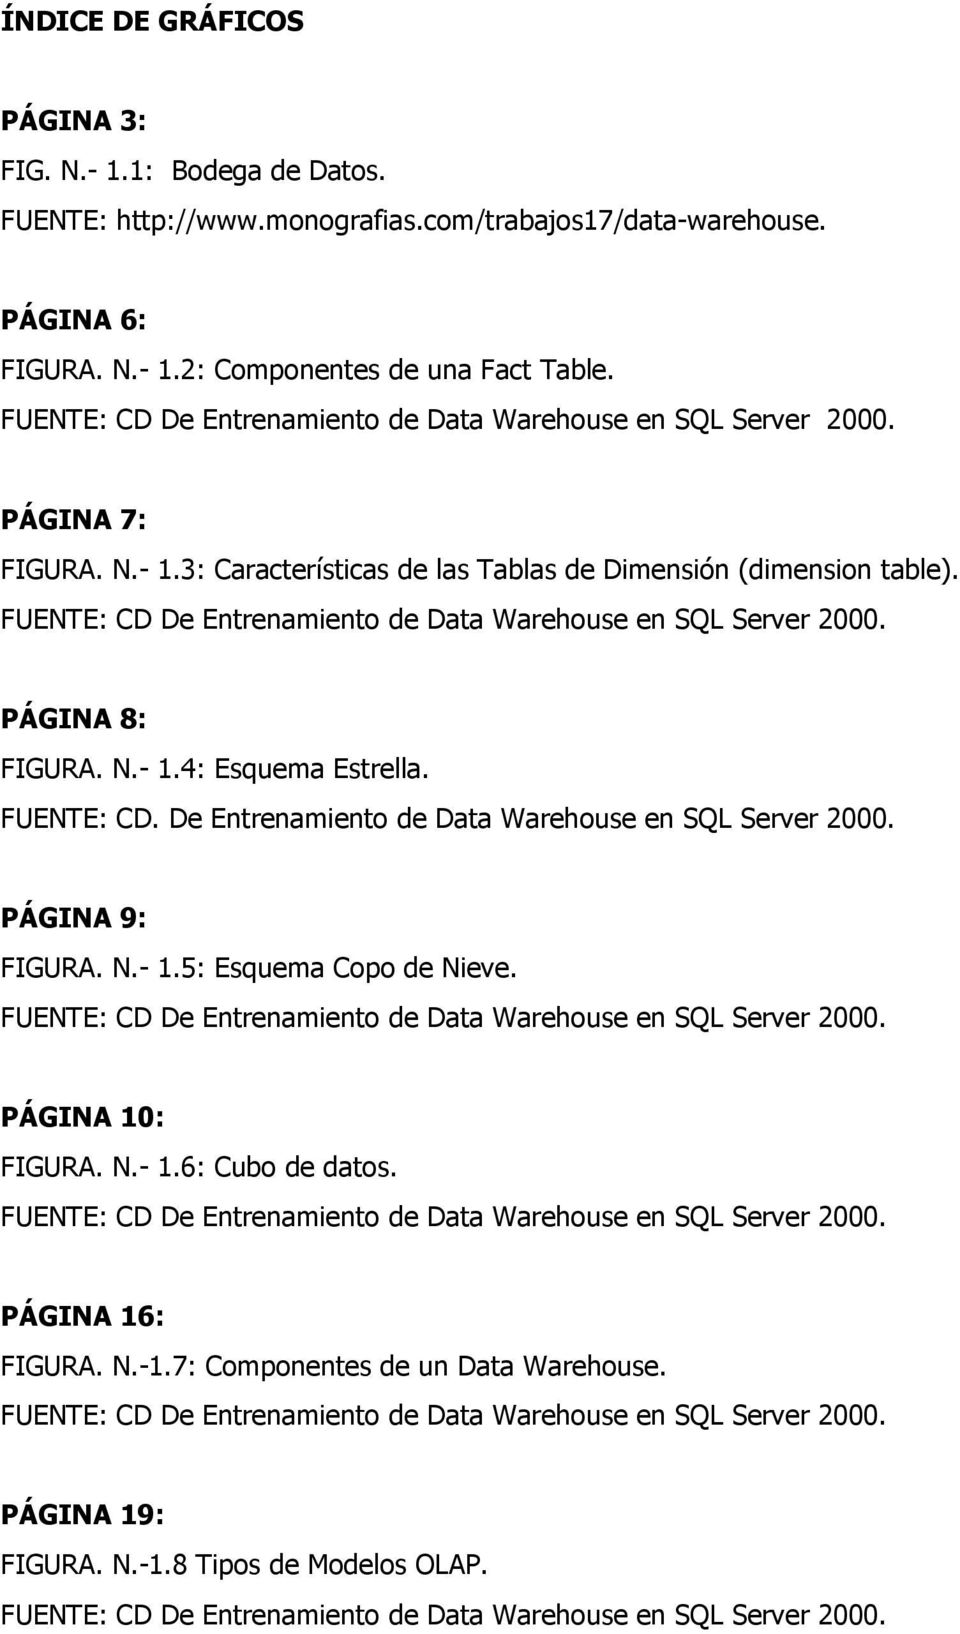 FUENTE: CD De Entrenamiento de Data Warehouse en SQL Server 2000. PÁGINA 8: FIGURA. N.- 1.4: Esquema Estrella. FUENTE: CD. De Entrenamiento de Data Warehouse en SQL Server 2000. PÁGINA 9: FIGURA. N.- 1.5: Esquema Copo de Nieve.